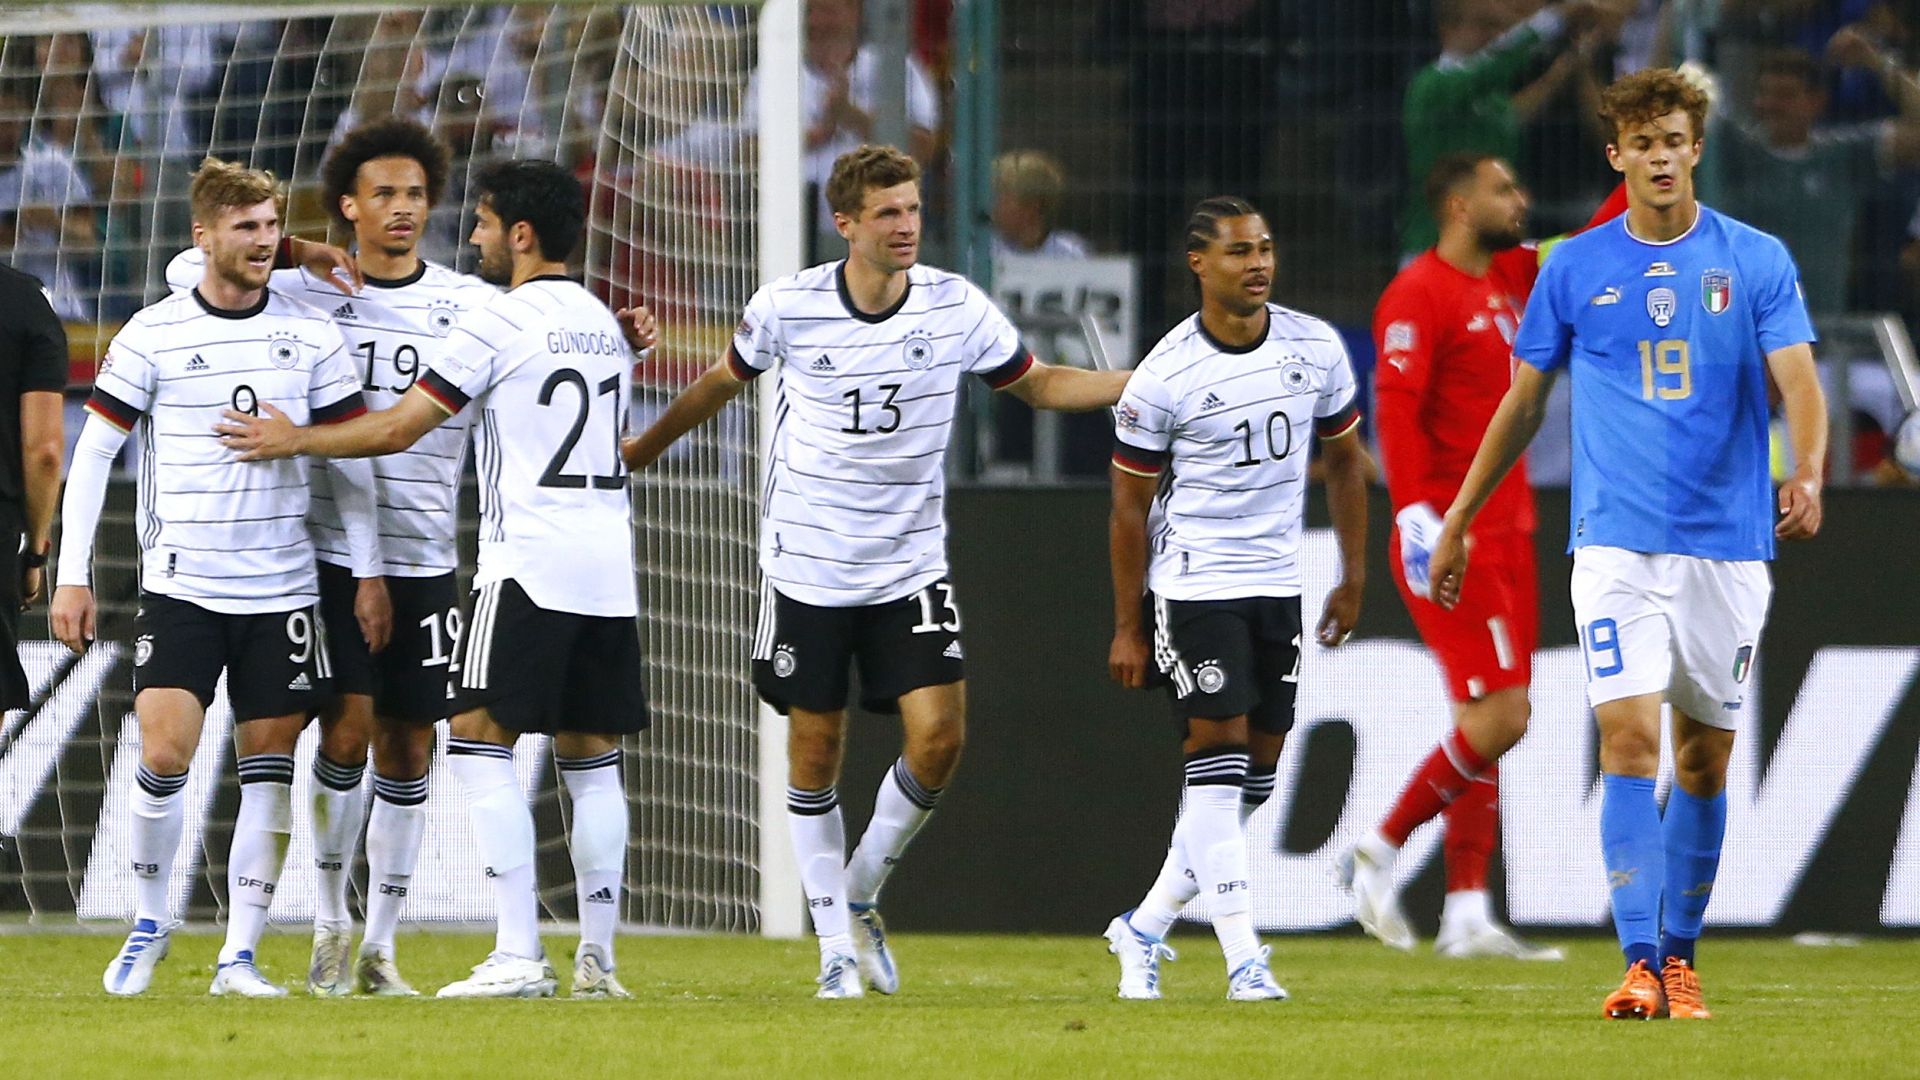 Alemania derrotó 5-2 a Italia en el último partido del Grupo A3 de la Nations League 2022